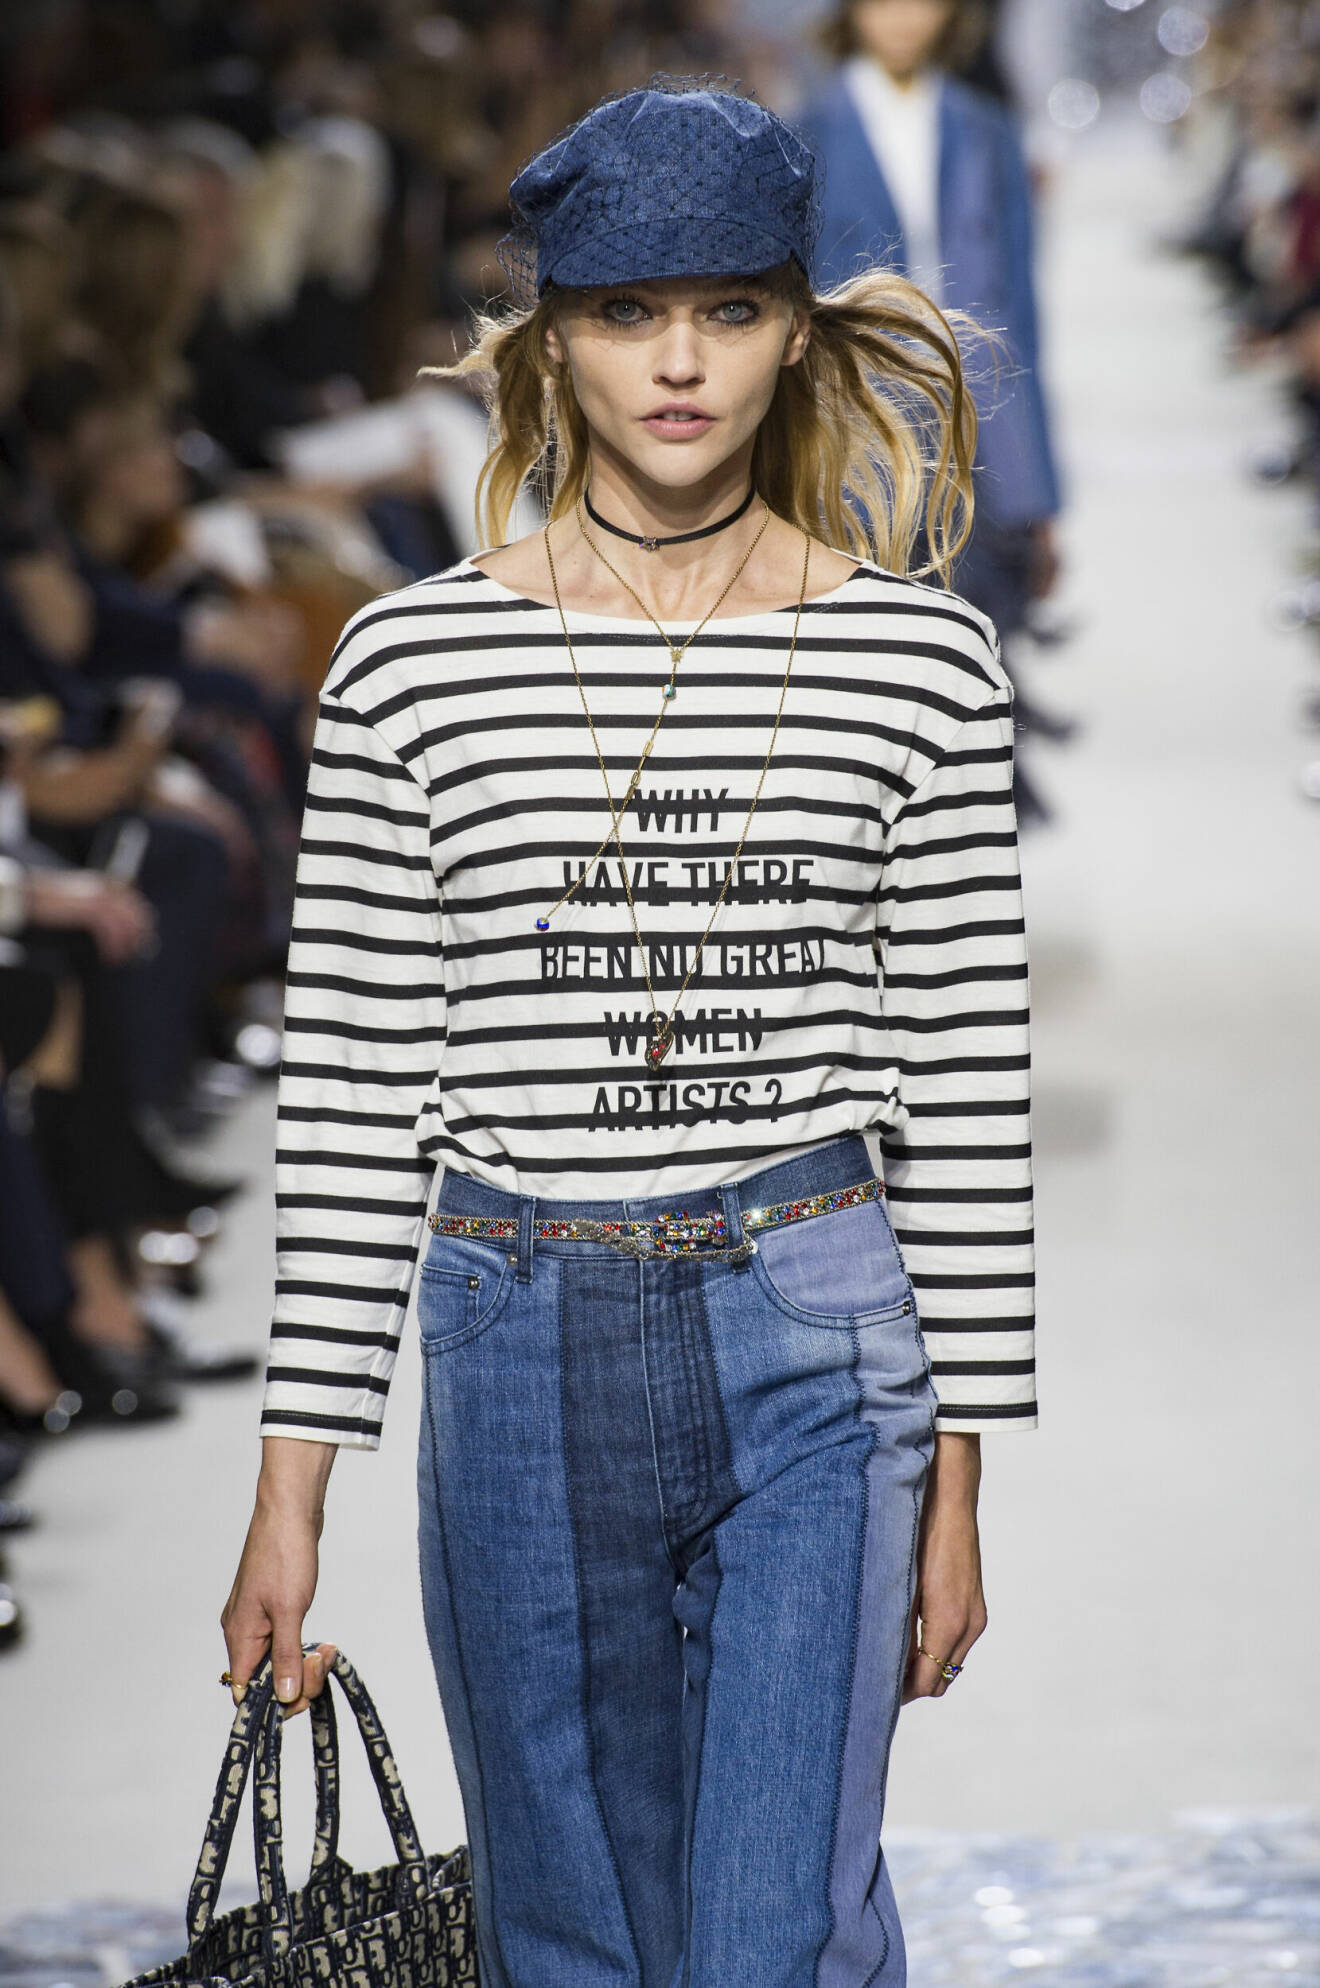 Diors vår- och sommarkollektion 2018 innehöll en tröja med feministiskt budskap.